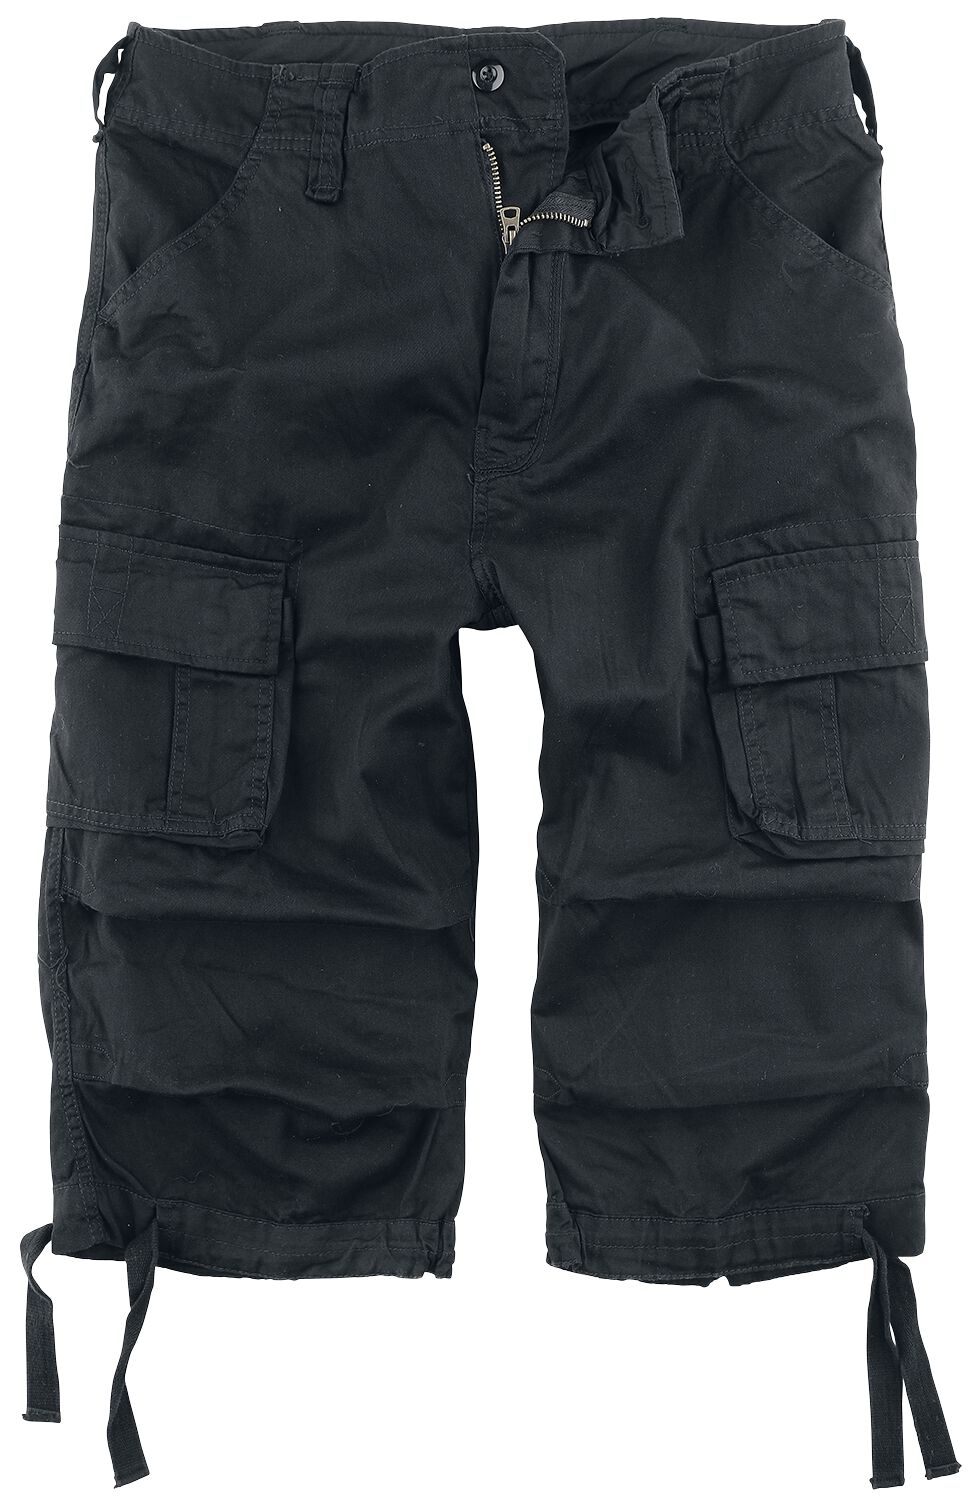 Brandit Urban Legend 3/4 Shorts Short schwarz in 3XL